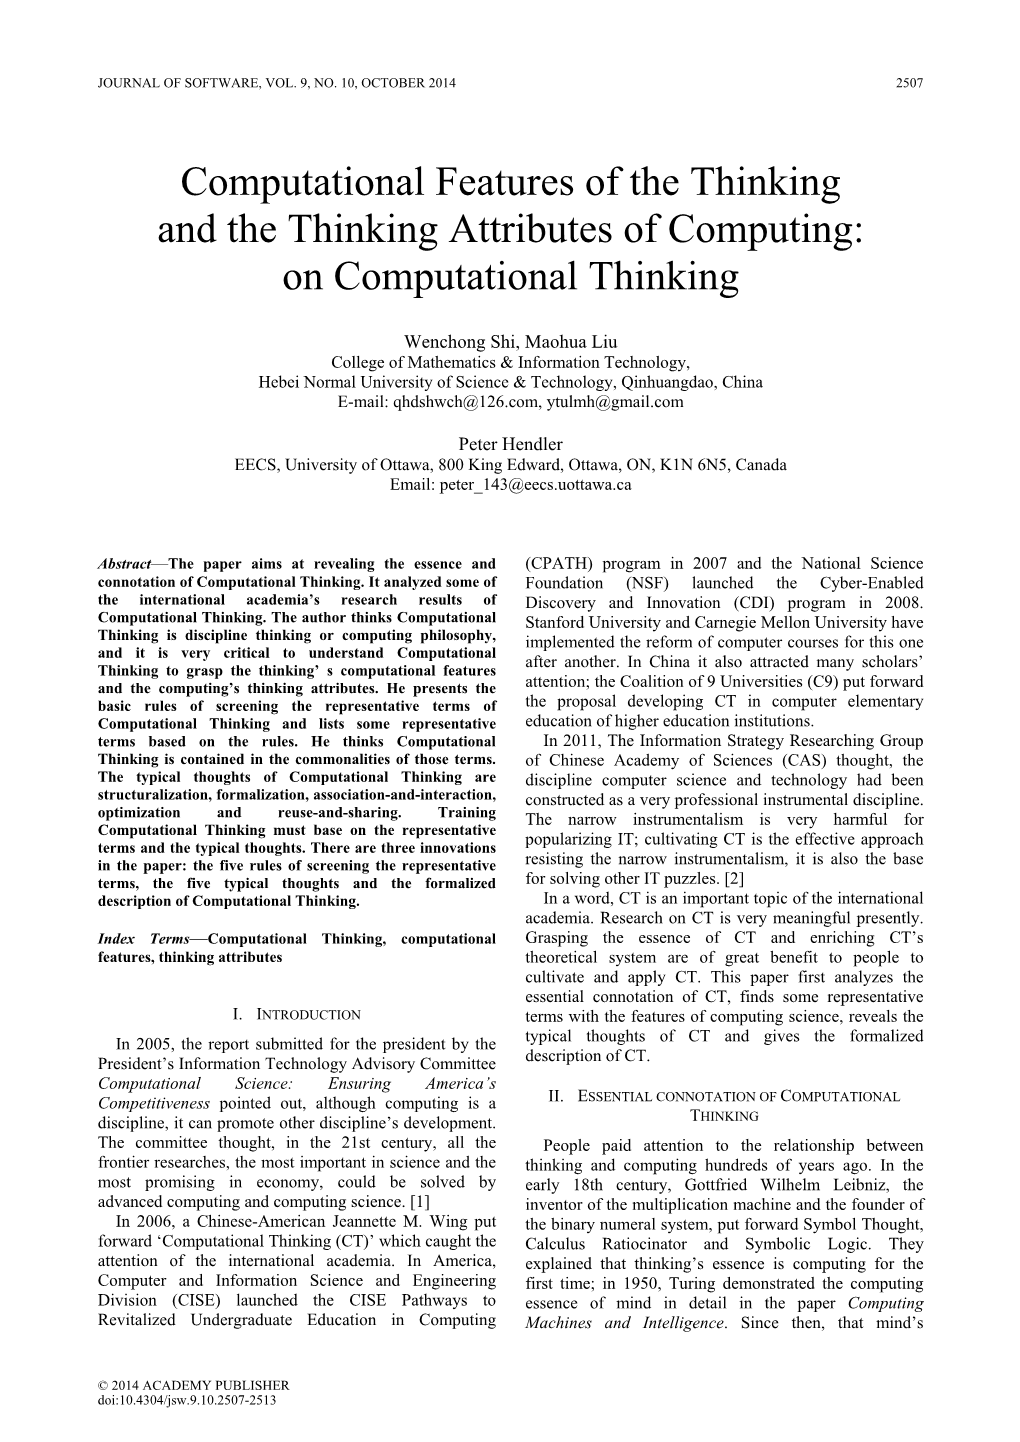 On Computational Thinking